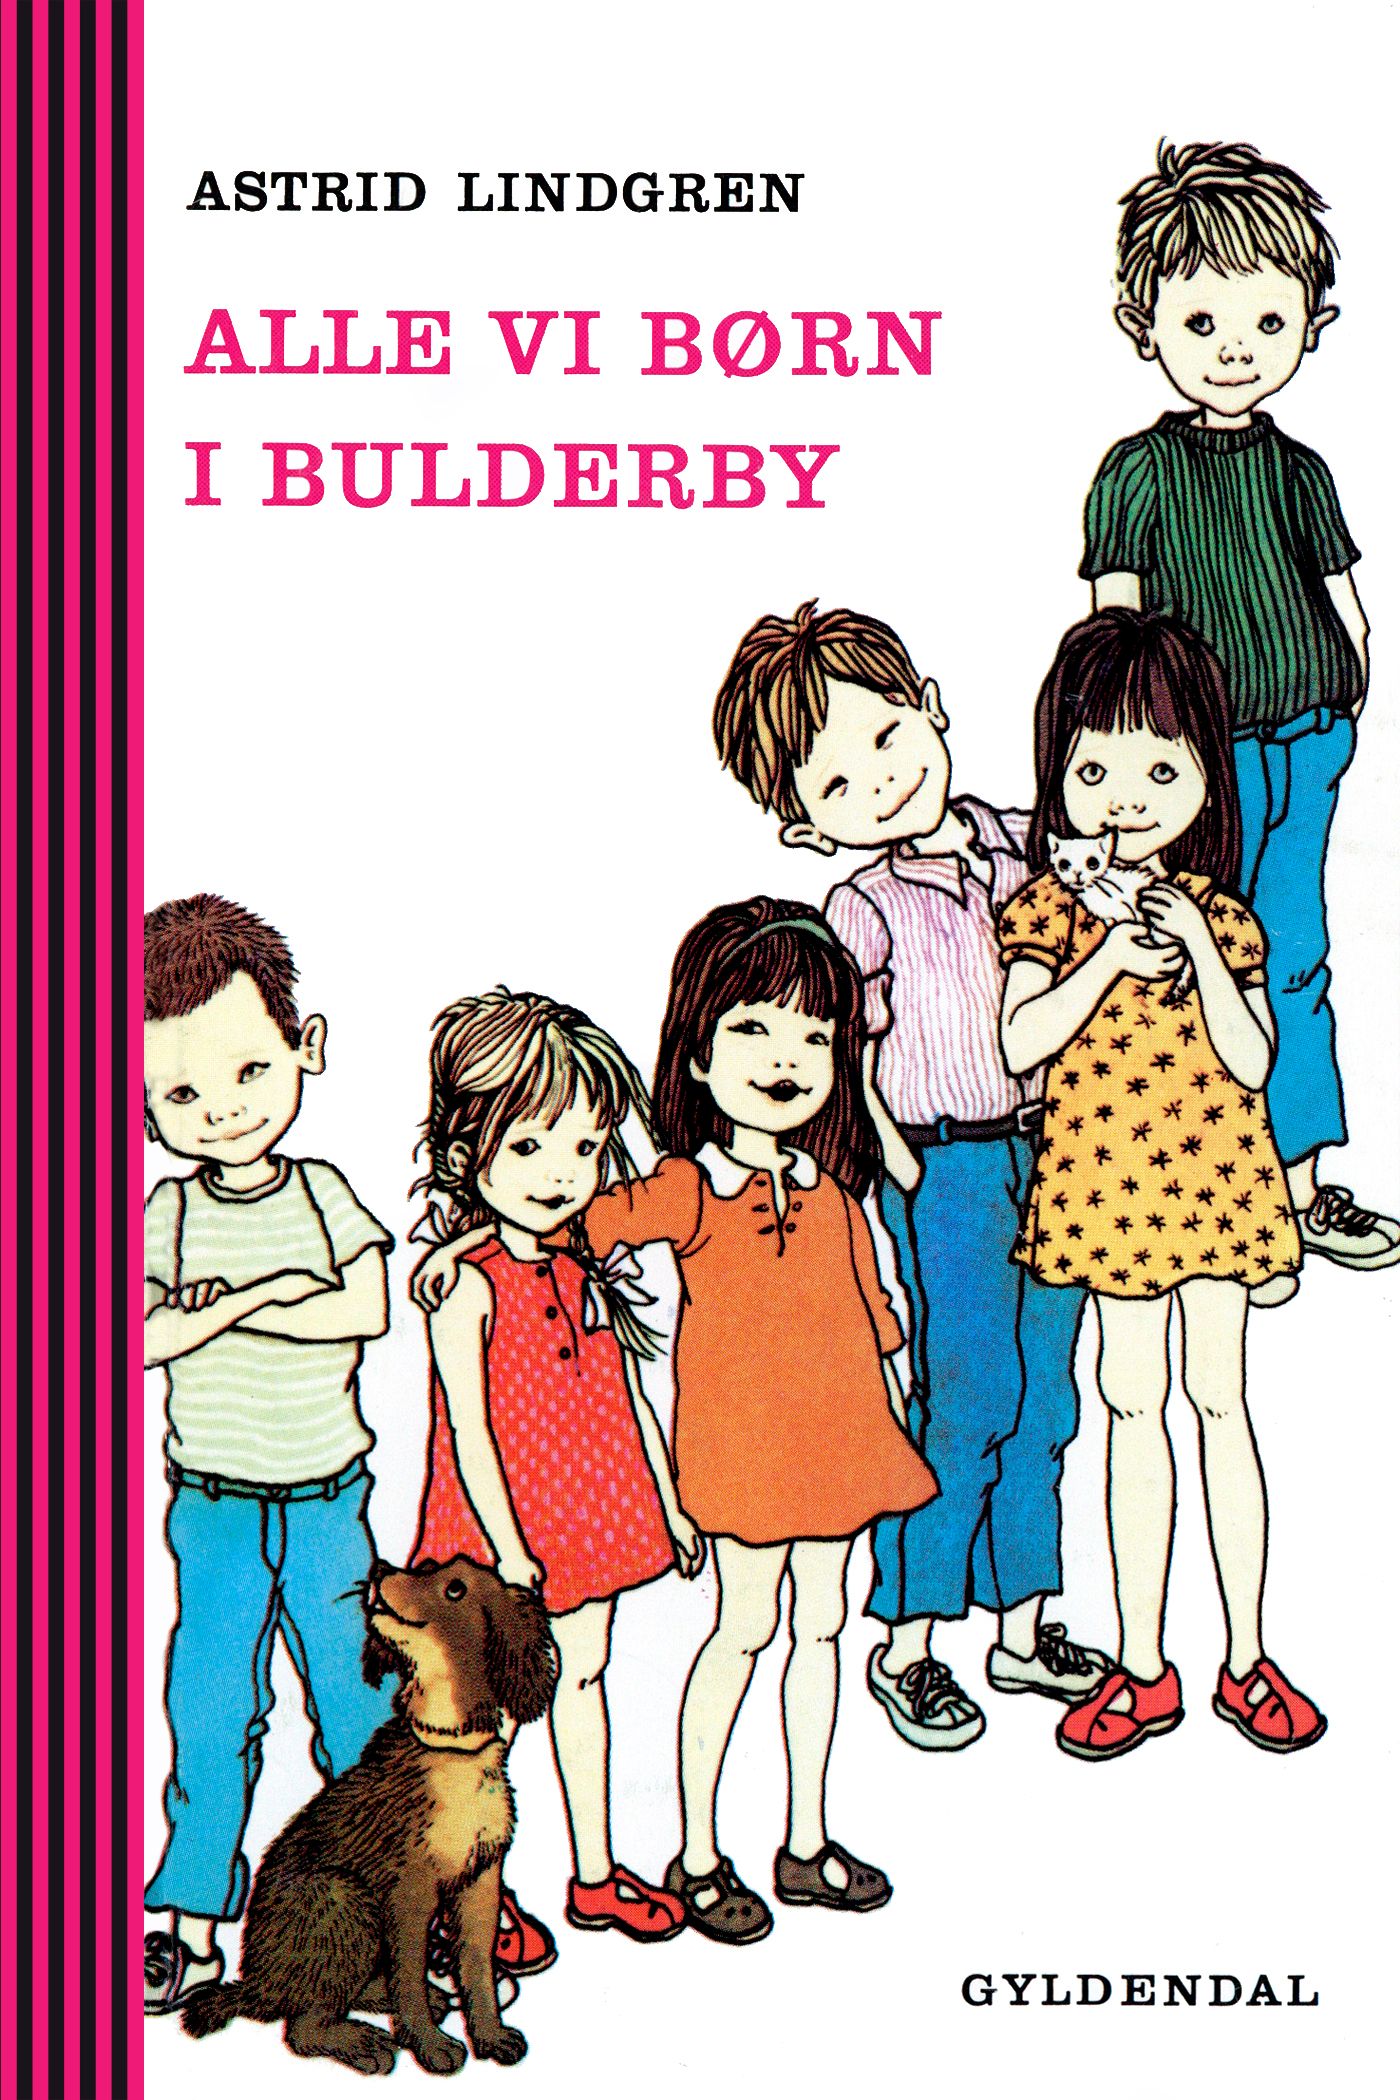 Alle vi børn i bulderby, e-bok av Astrid Lindgren